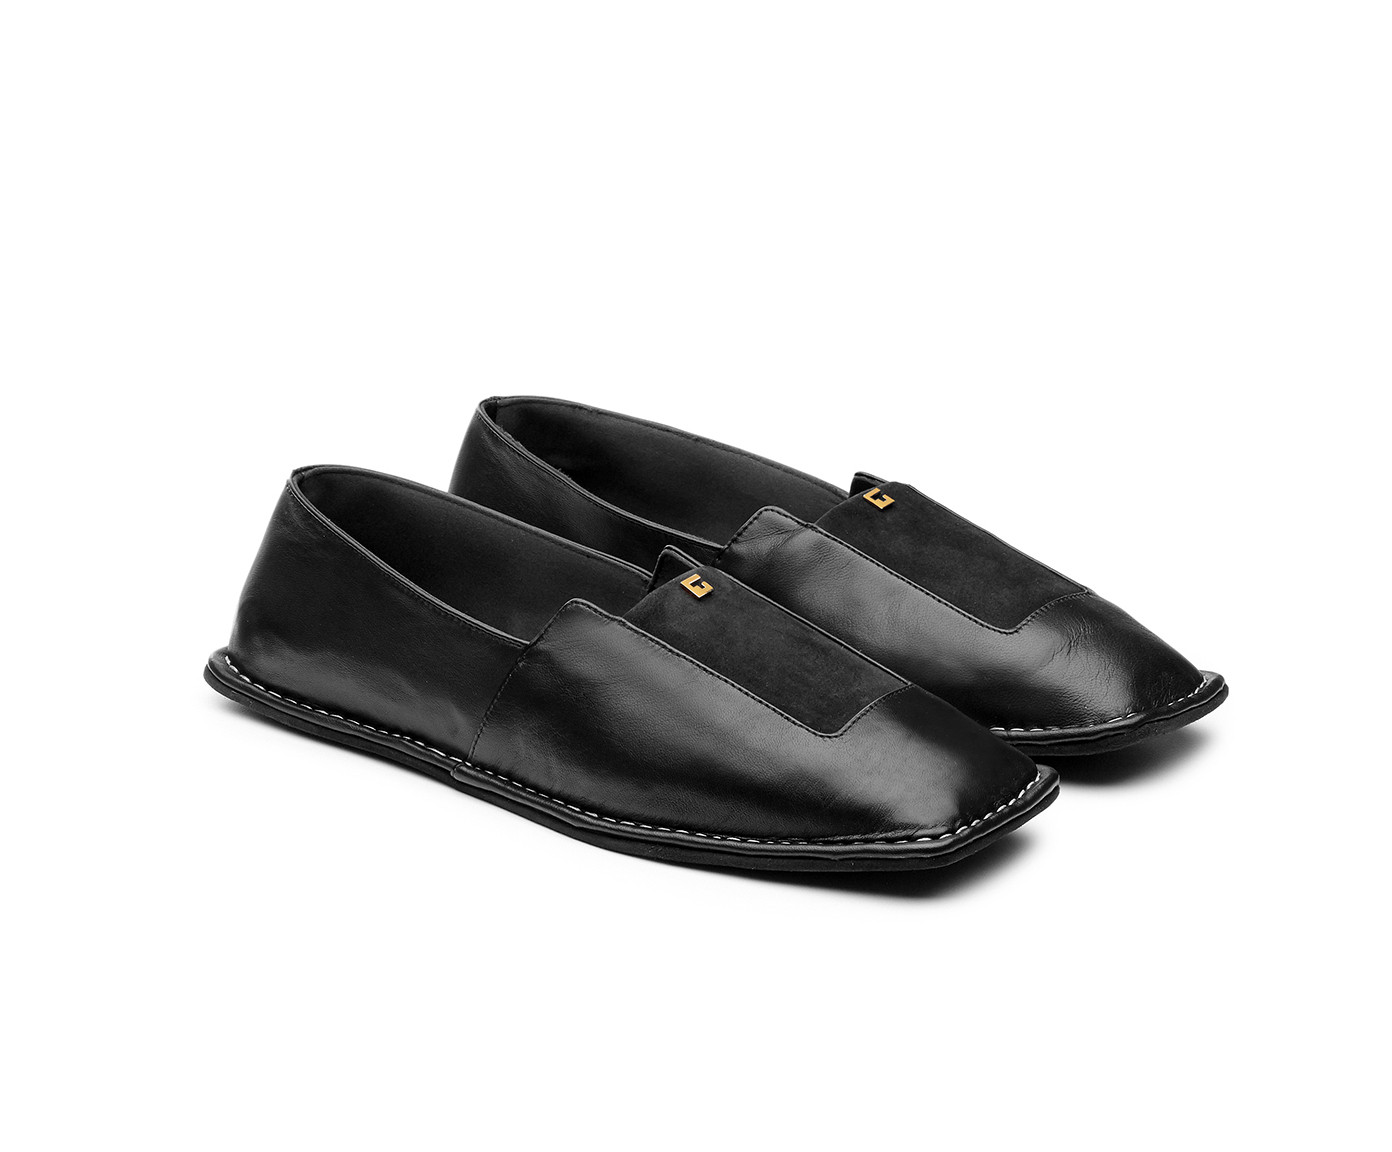 Giordano Torresi shoes | IANUS